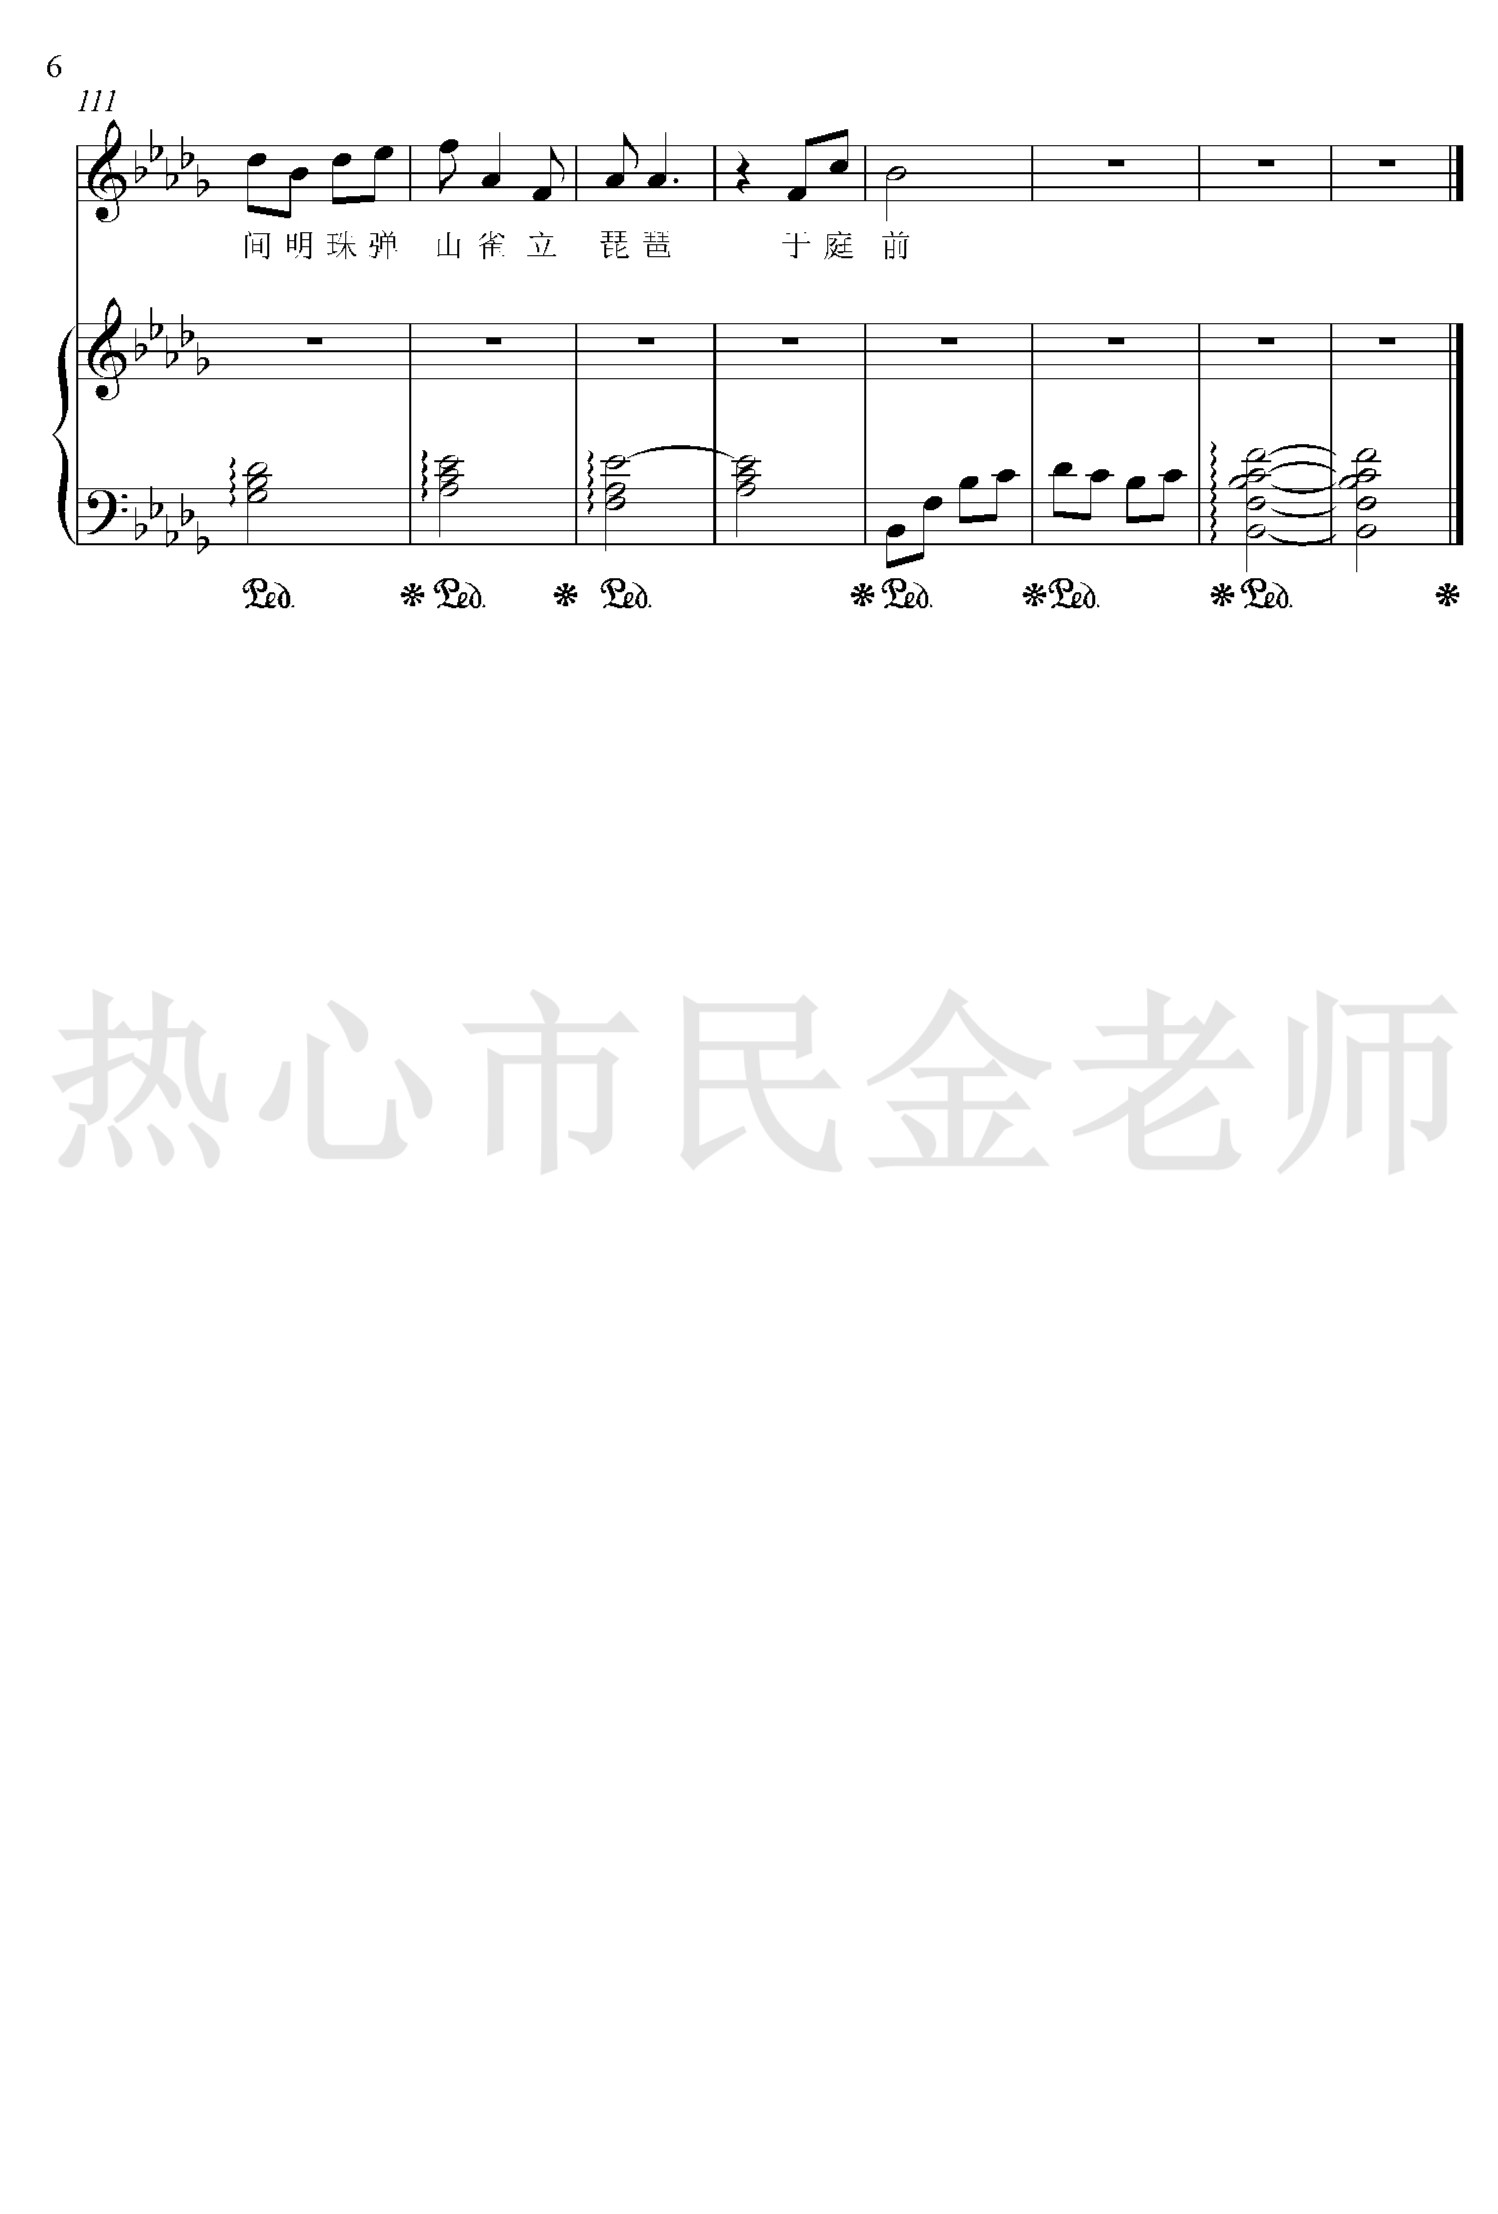 盗将行钢琴谱-花粥/马雨阳演唱-金老师弹唱版1903106